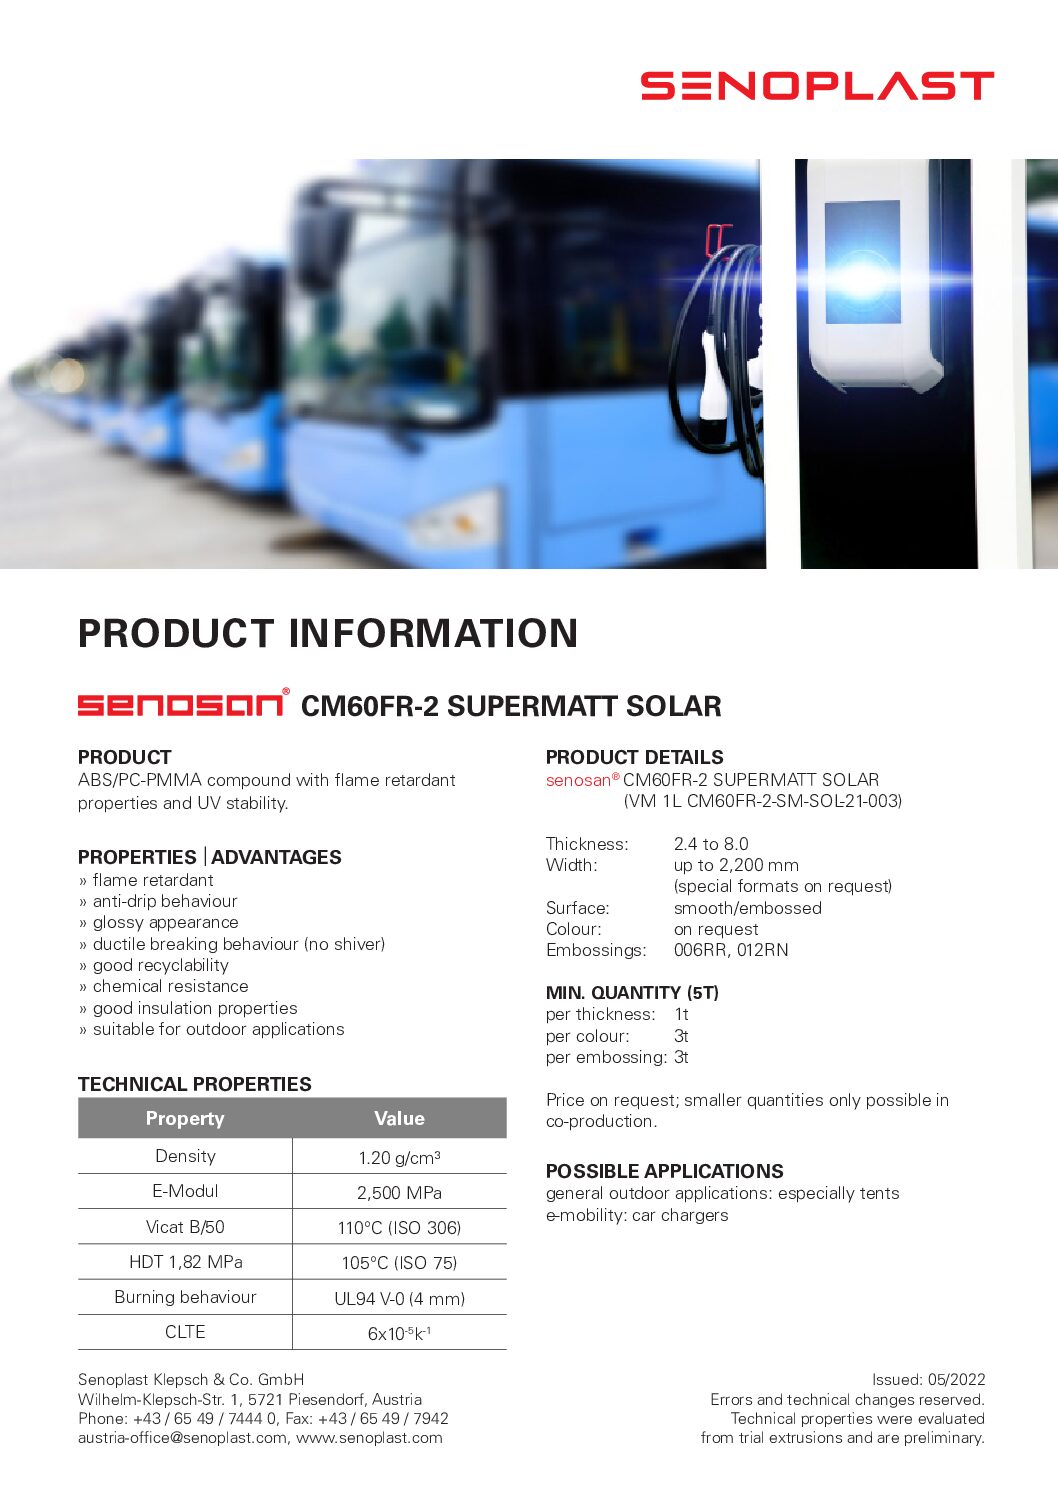 senosan® CM60FR-2 Supermatt Solar